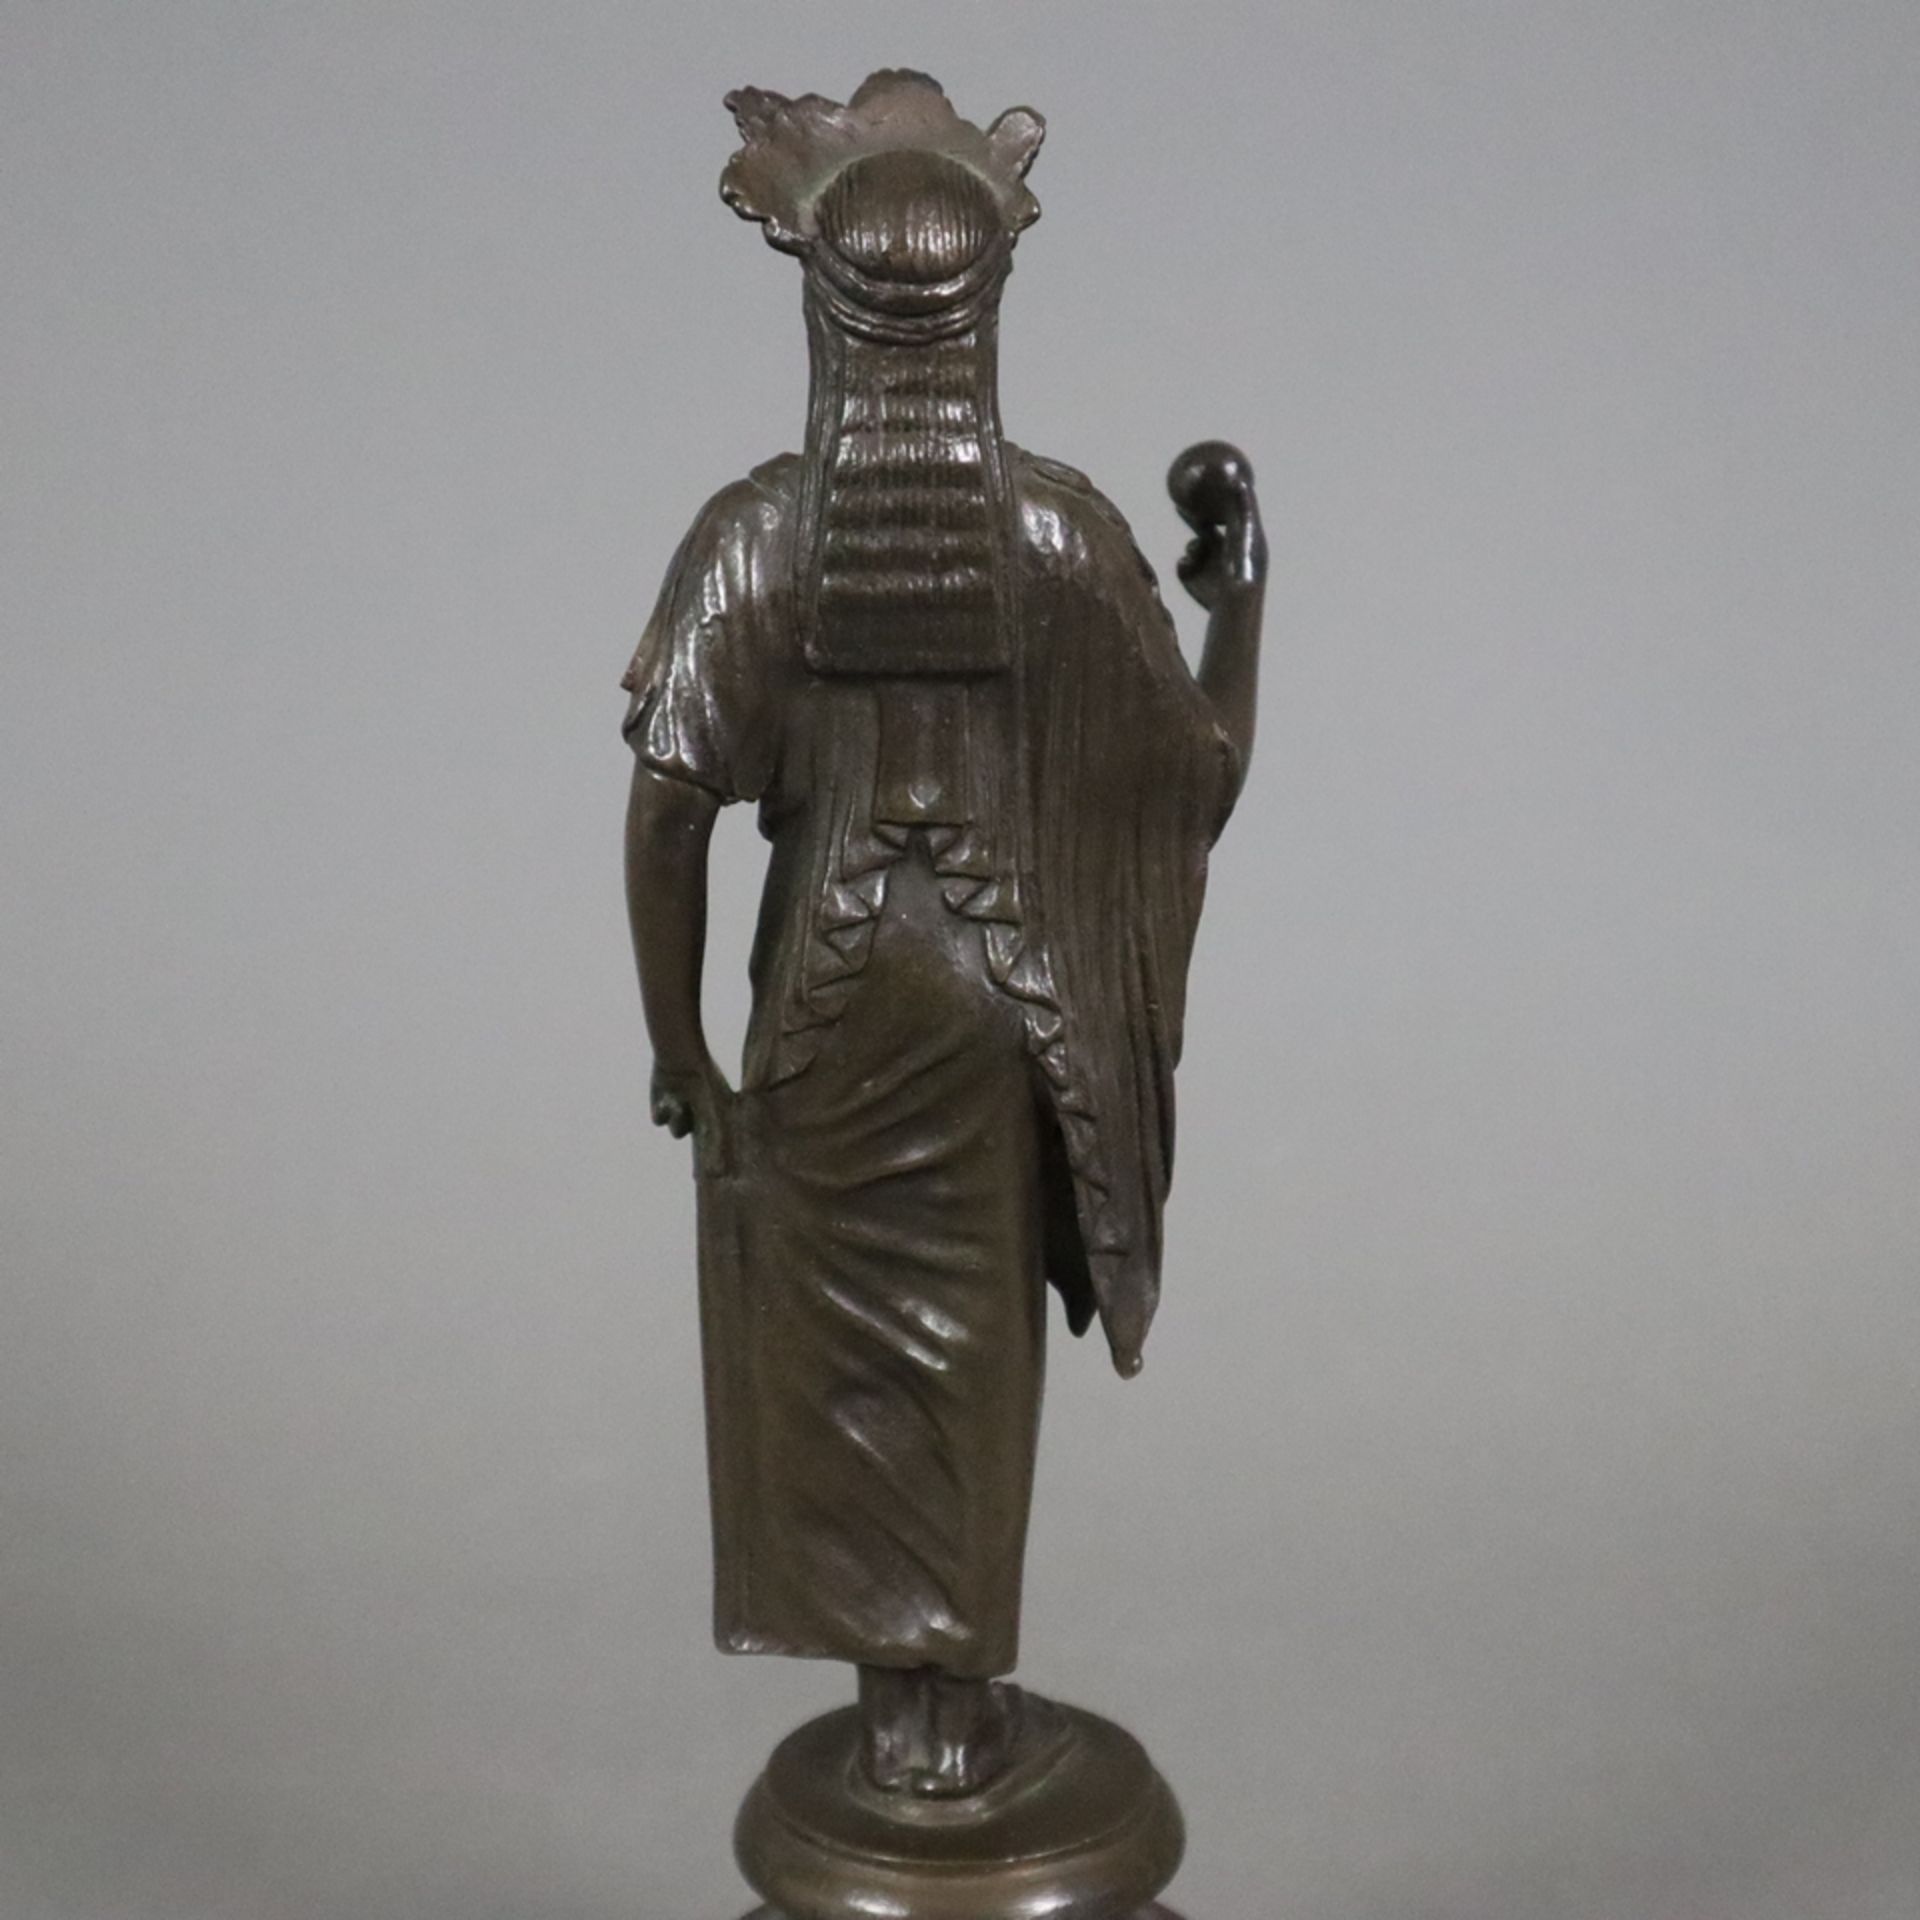 Figurine einer antiken Priesterin - Bronze, braun patiniert, antikisierende Frauenfigur mit Diadem, - Bild 8 aus 8